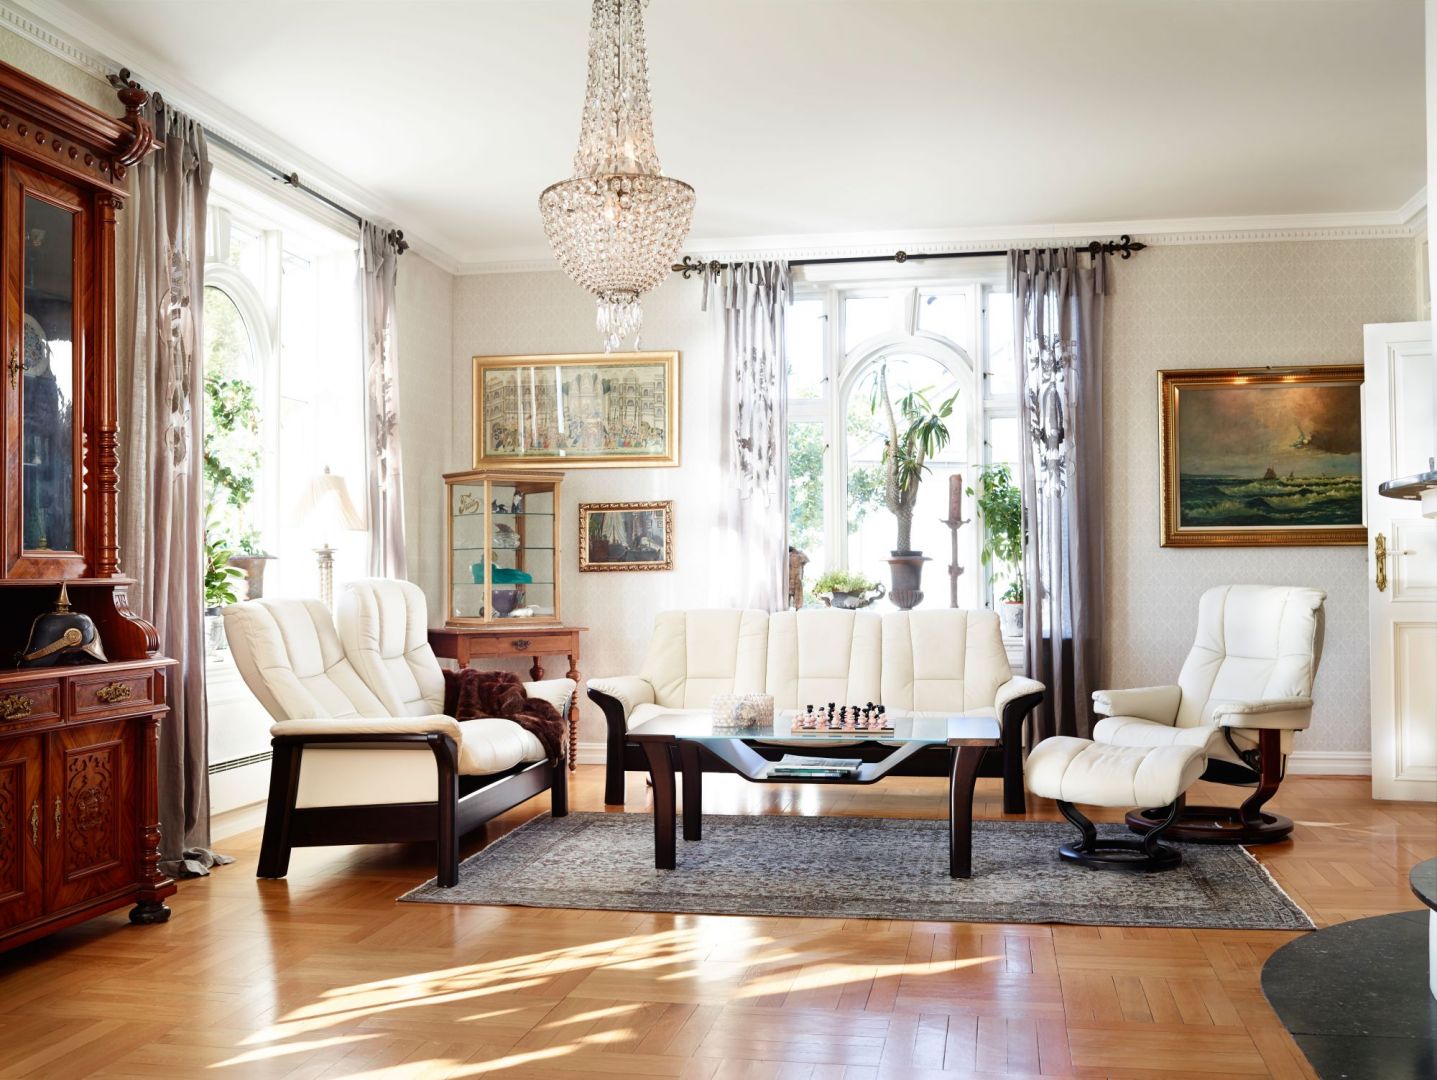 Eleganckie sofy z kolekcji Stressless Windsor zapewnią wygodę siedzenia, ale również dodadzą wnętrzu salonu niespotykanej elegancji. Fot. Ambientefurniture.com